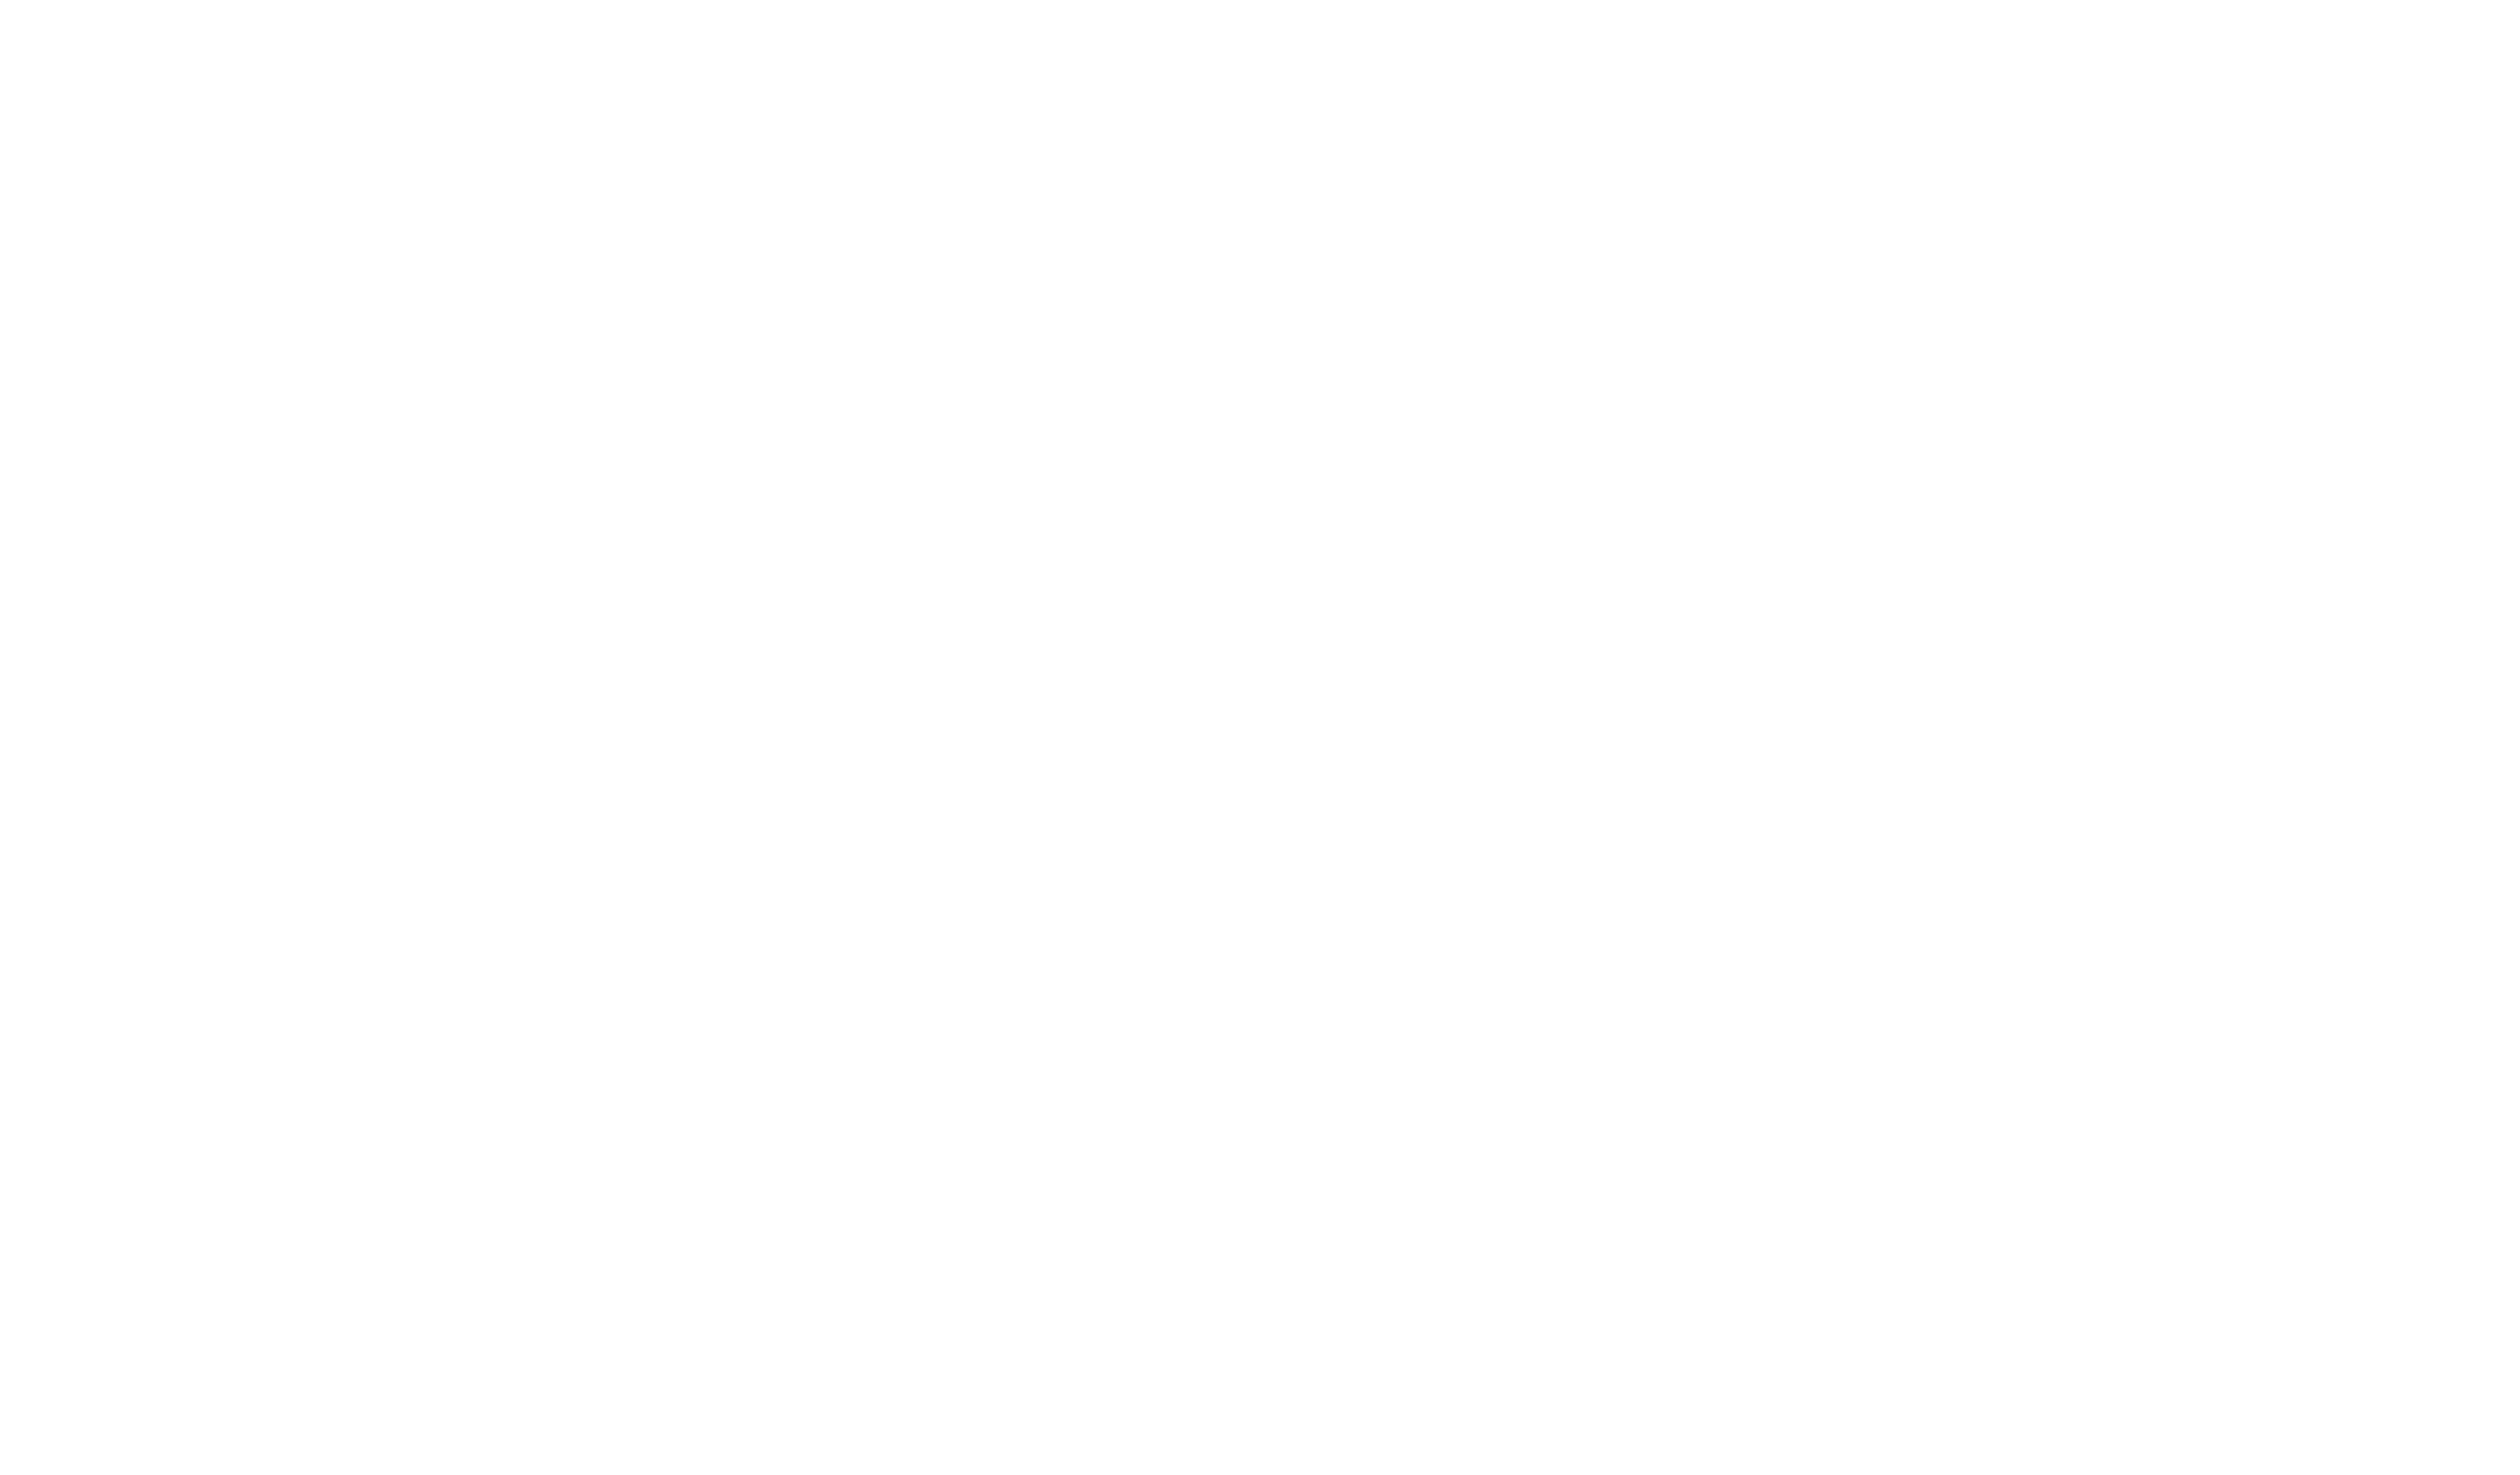 Clingy Games